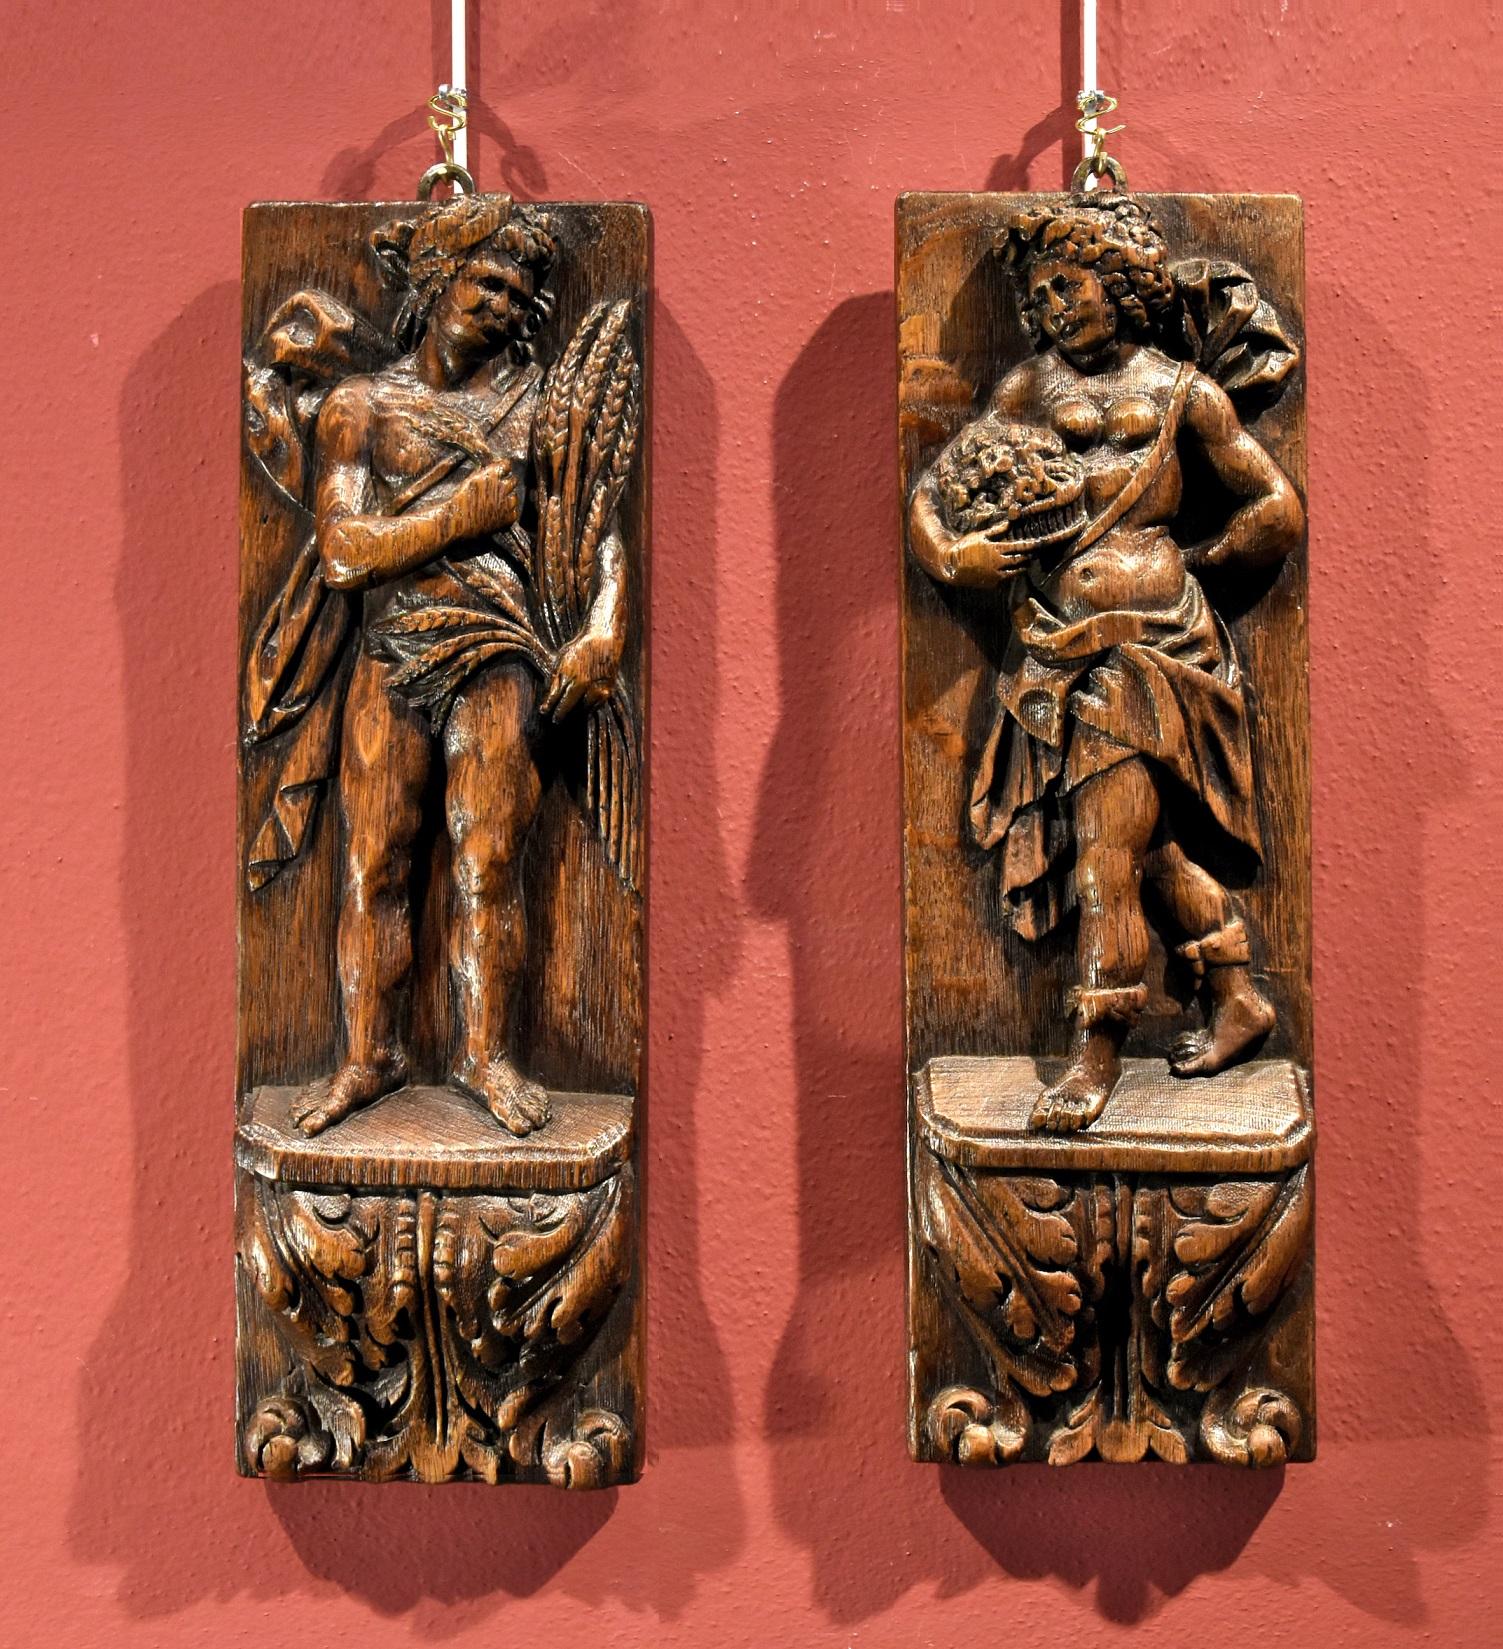 Paire de bas-reliefs Printemps Automne Sculpteur Flemish 17ème siècle Wood   - Sculpture de Flemish sculptor of the 17th century